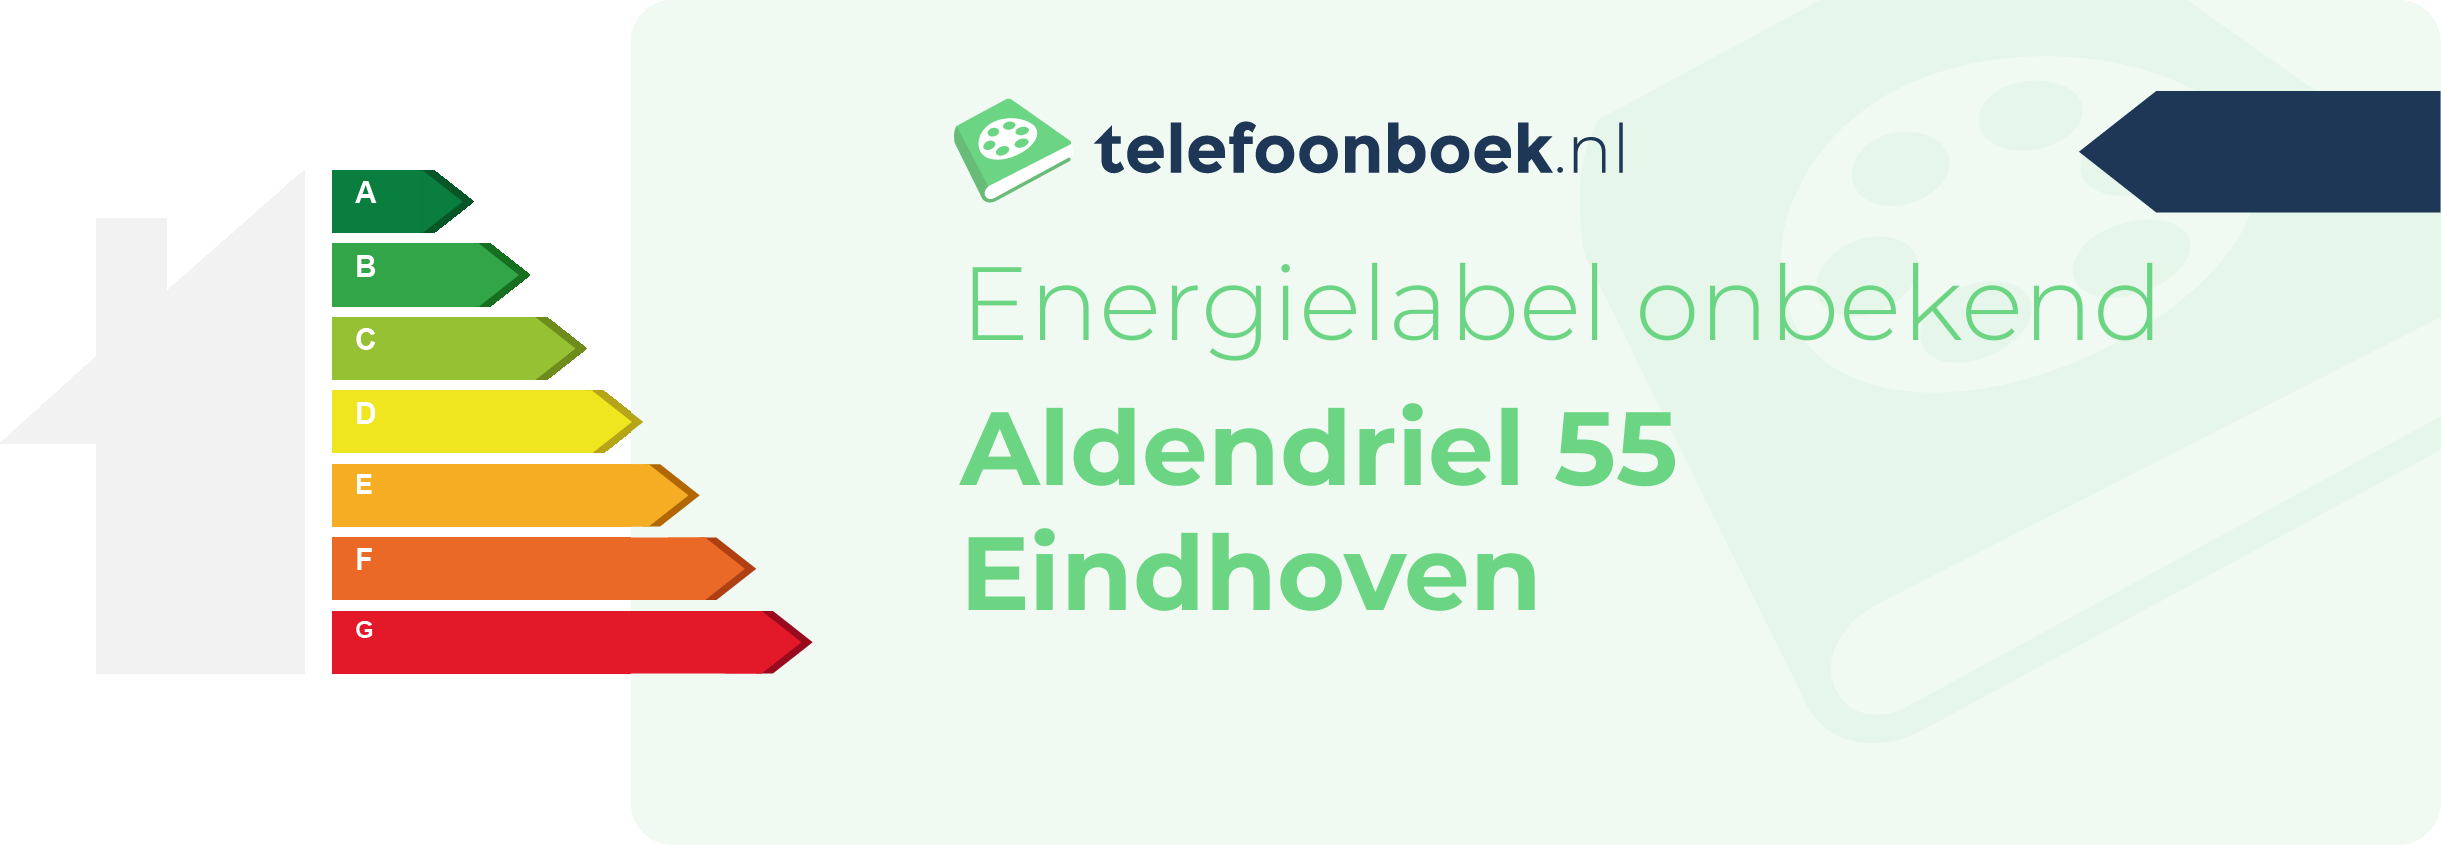 Energielabel Aldendriel 55 Eindhoven